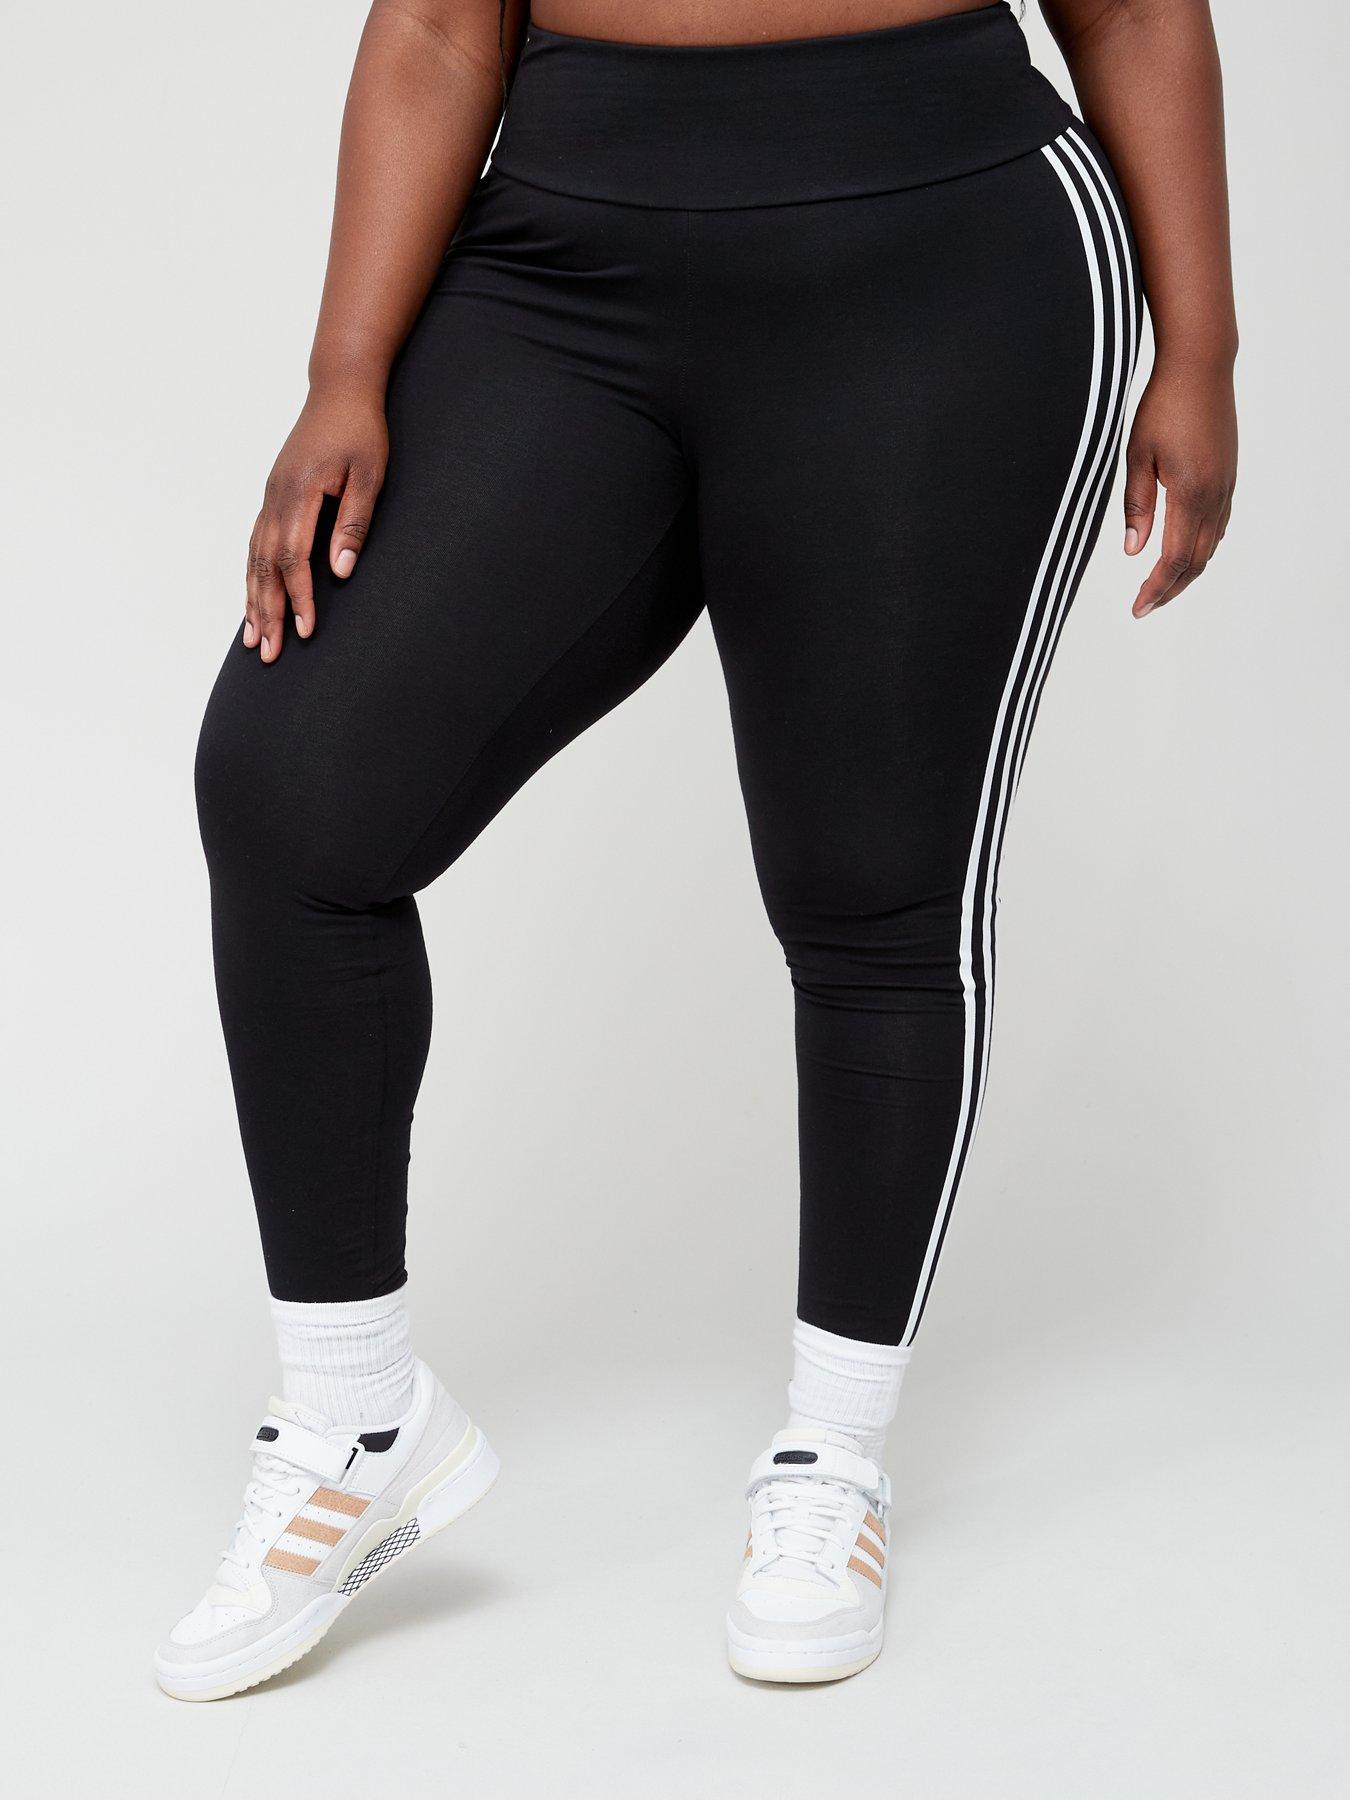 Buy Adidas Originals women plus size training leggings black